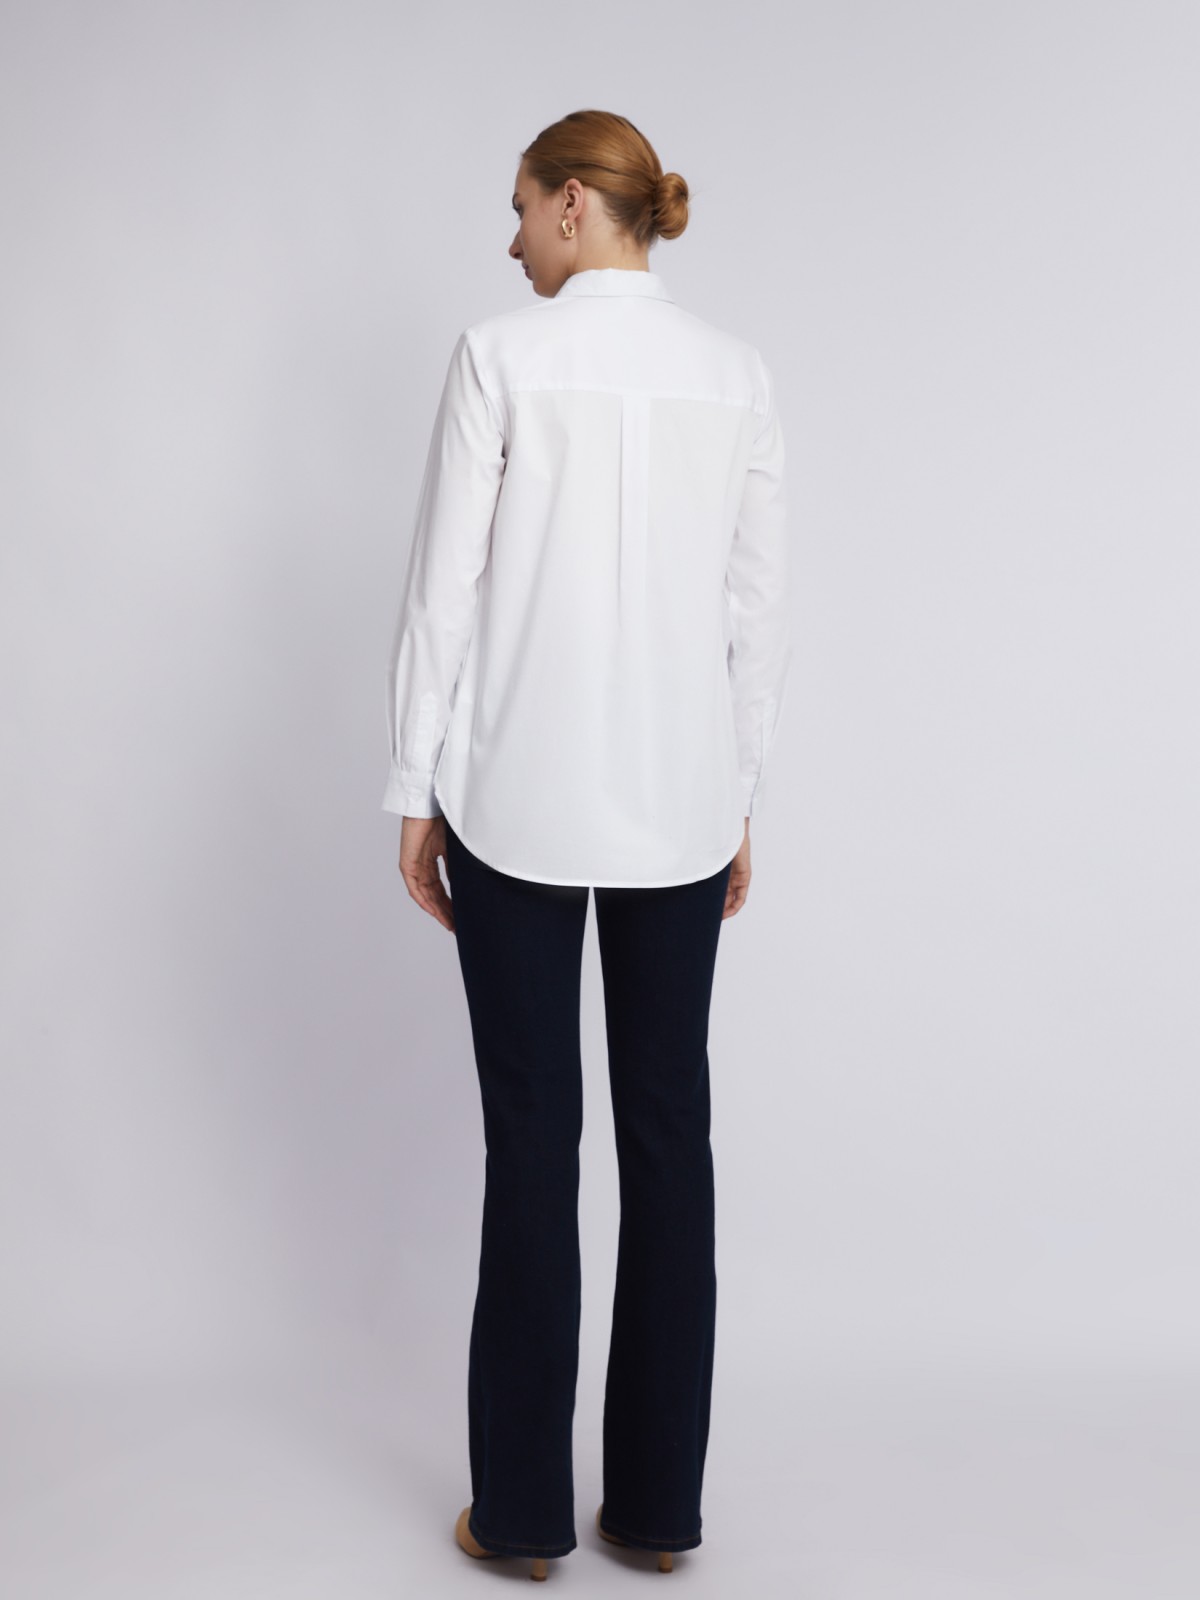 Офисная рубашка с длинным рукавом zolla 023311159152, цвет белый, размер XS - фото 6